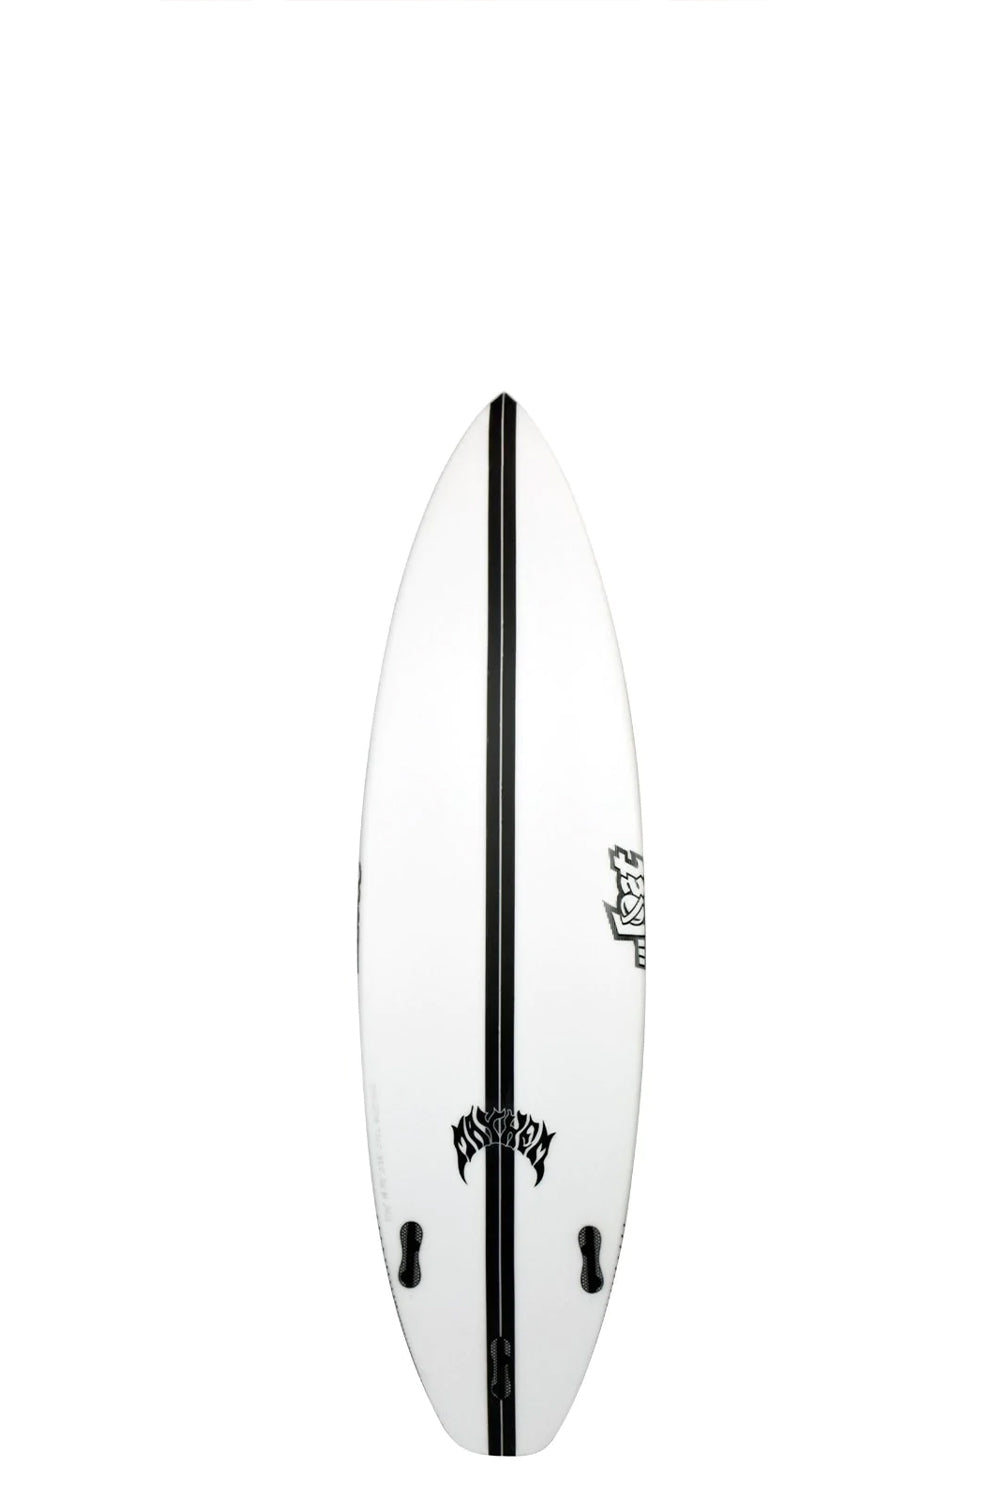 Lost Surfboards Driver 2.0 GROM Lightspeed EPS Surfboard | Sanbah Surf